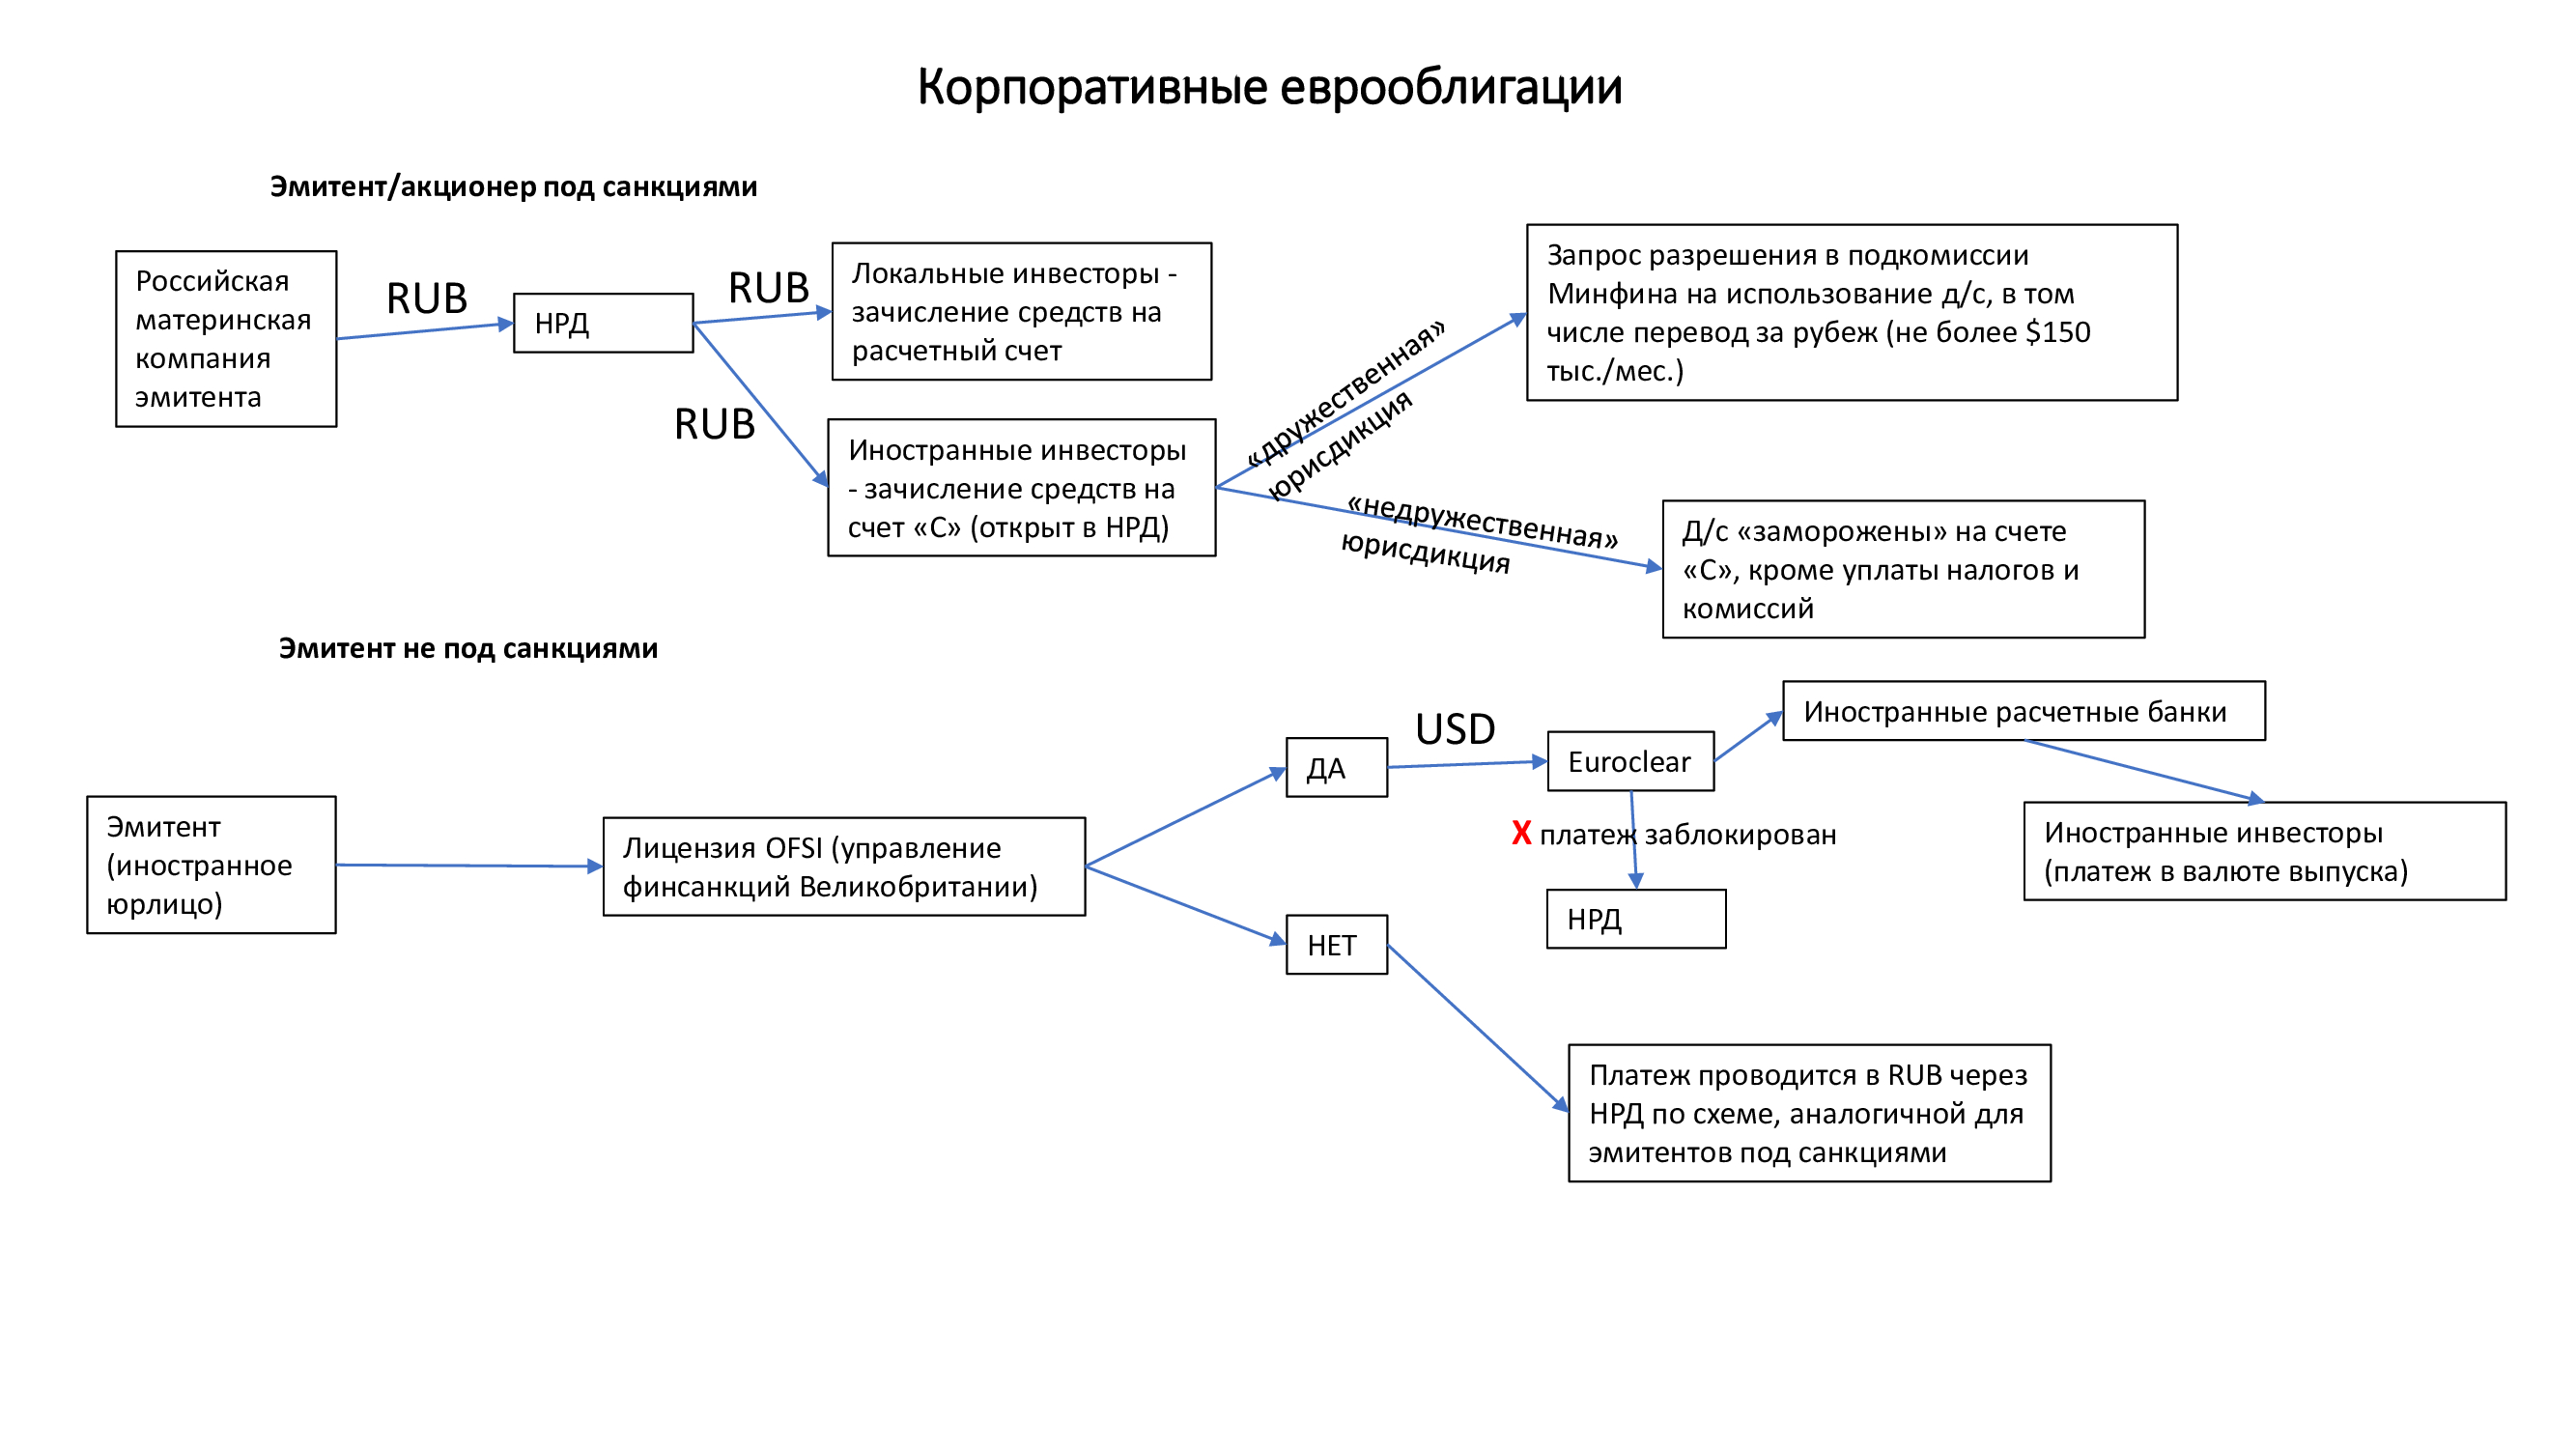 Схема выплат по российским корпоративным еврооблигациям